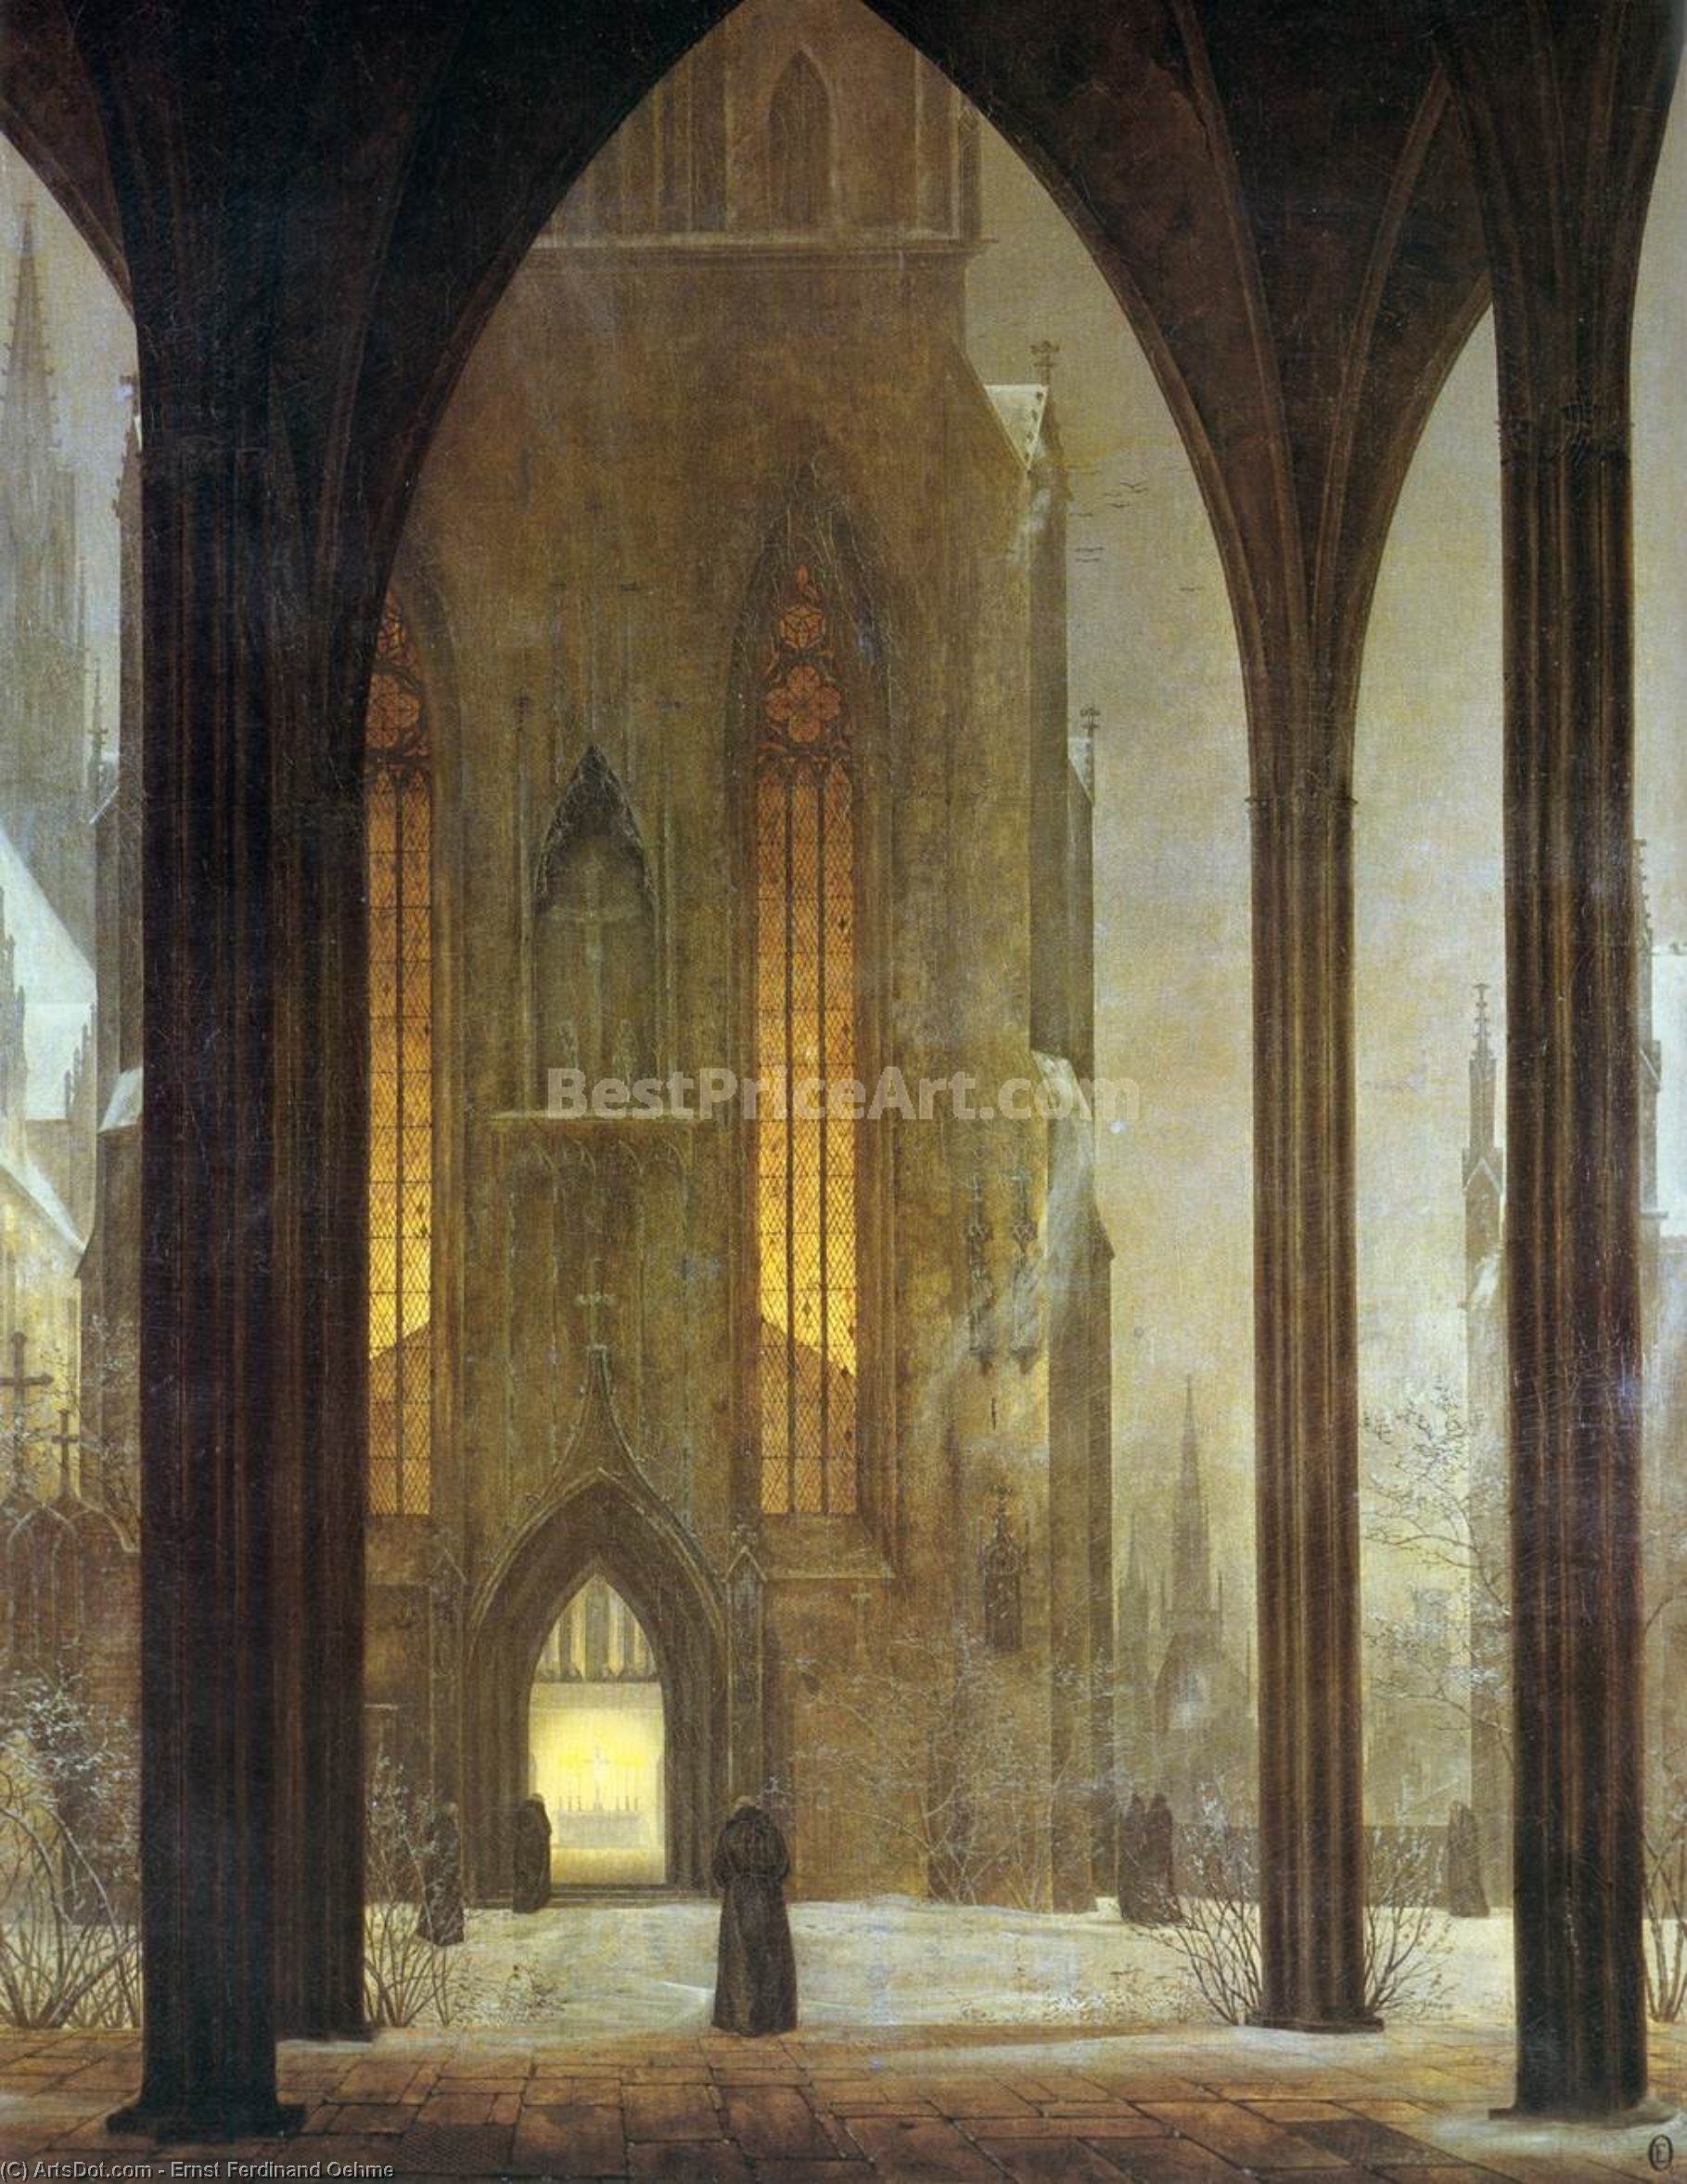 Wikioo.org – L'Encyclopédie des Beaux Arts - Peinture, Oeuvre de Ernst Ferdinand Oehme - Cathédrale de hiver